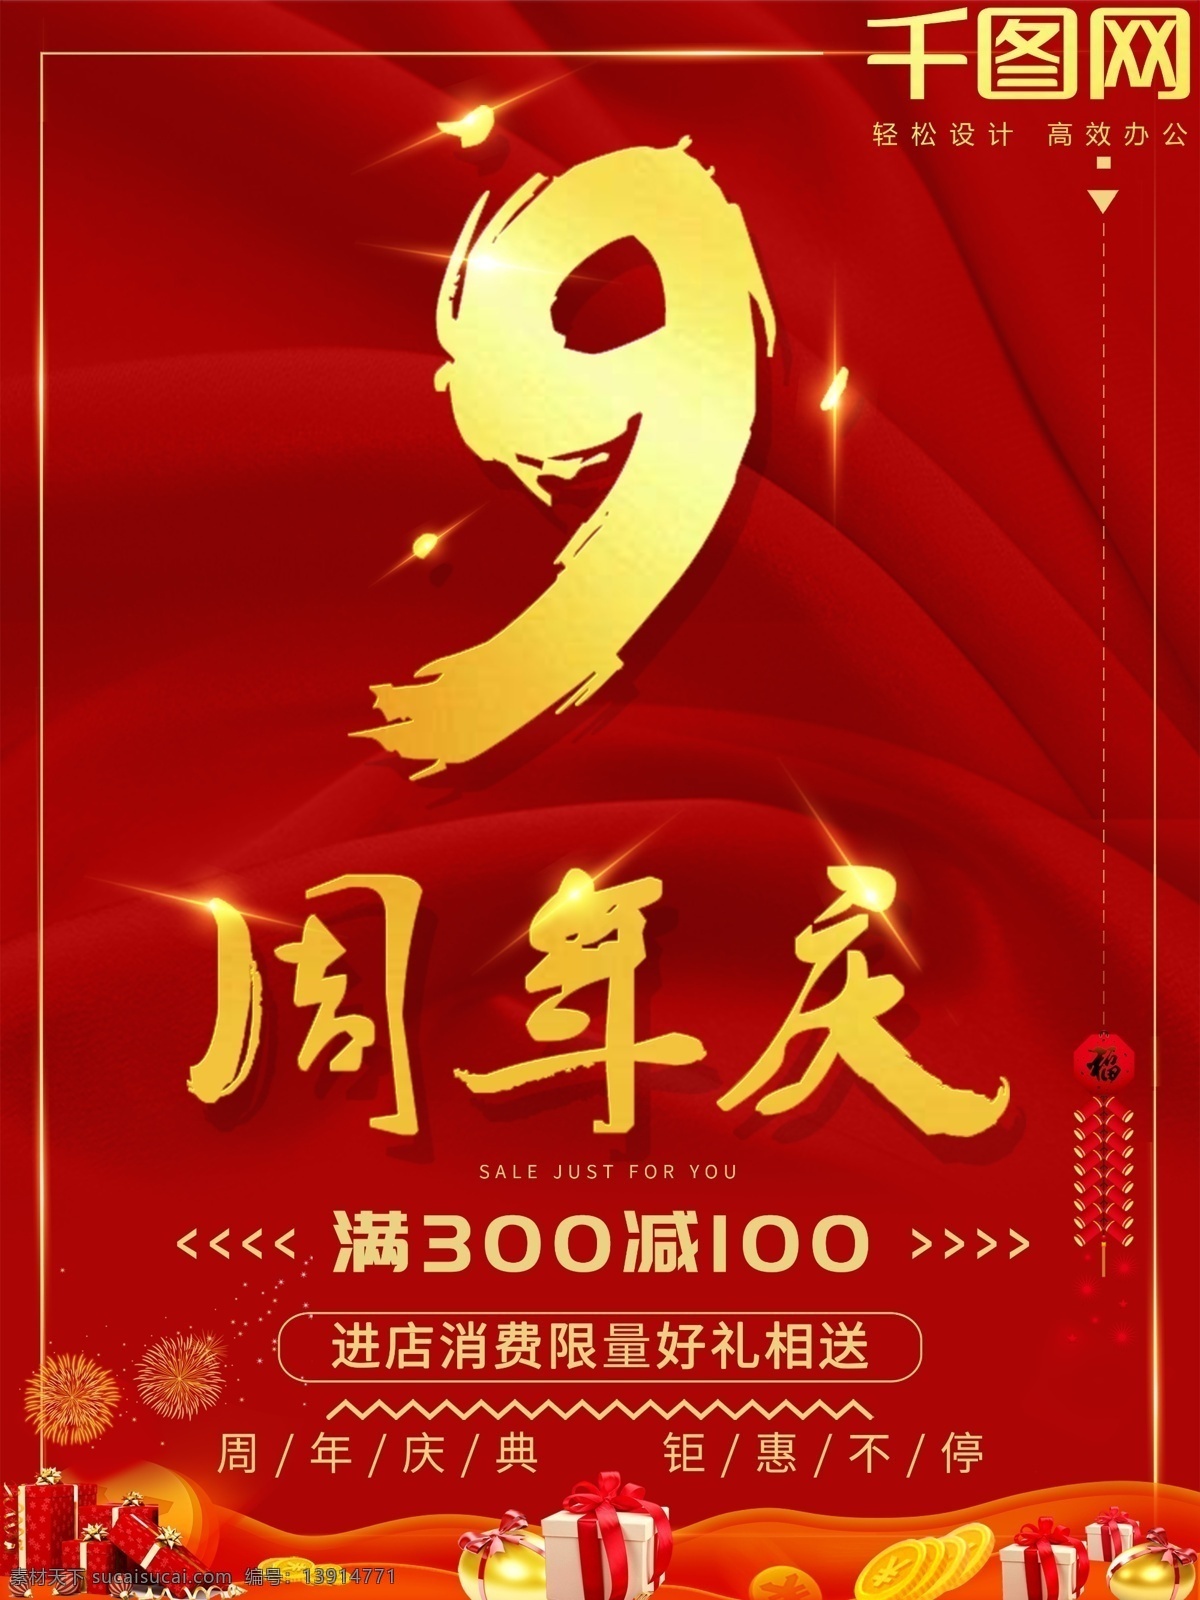 金色 大气 喜庆 周年庆 海报 促销海报 红色 9周年 周年庆海报 满减 钜惠不停